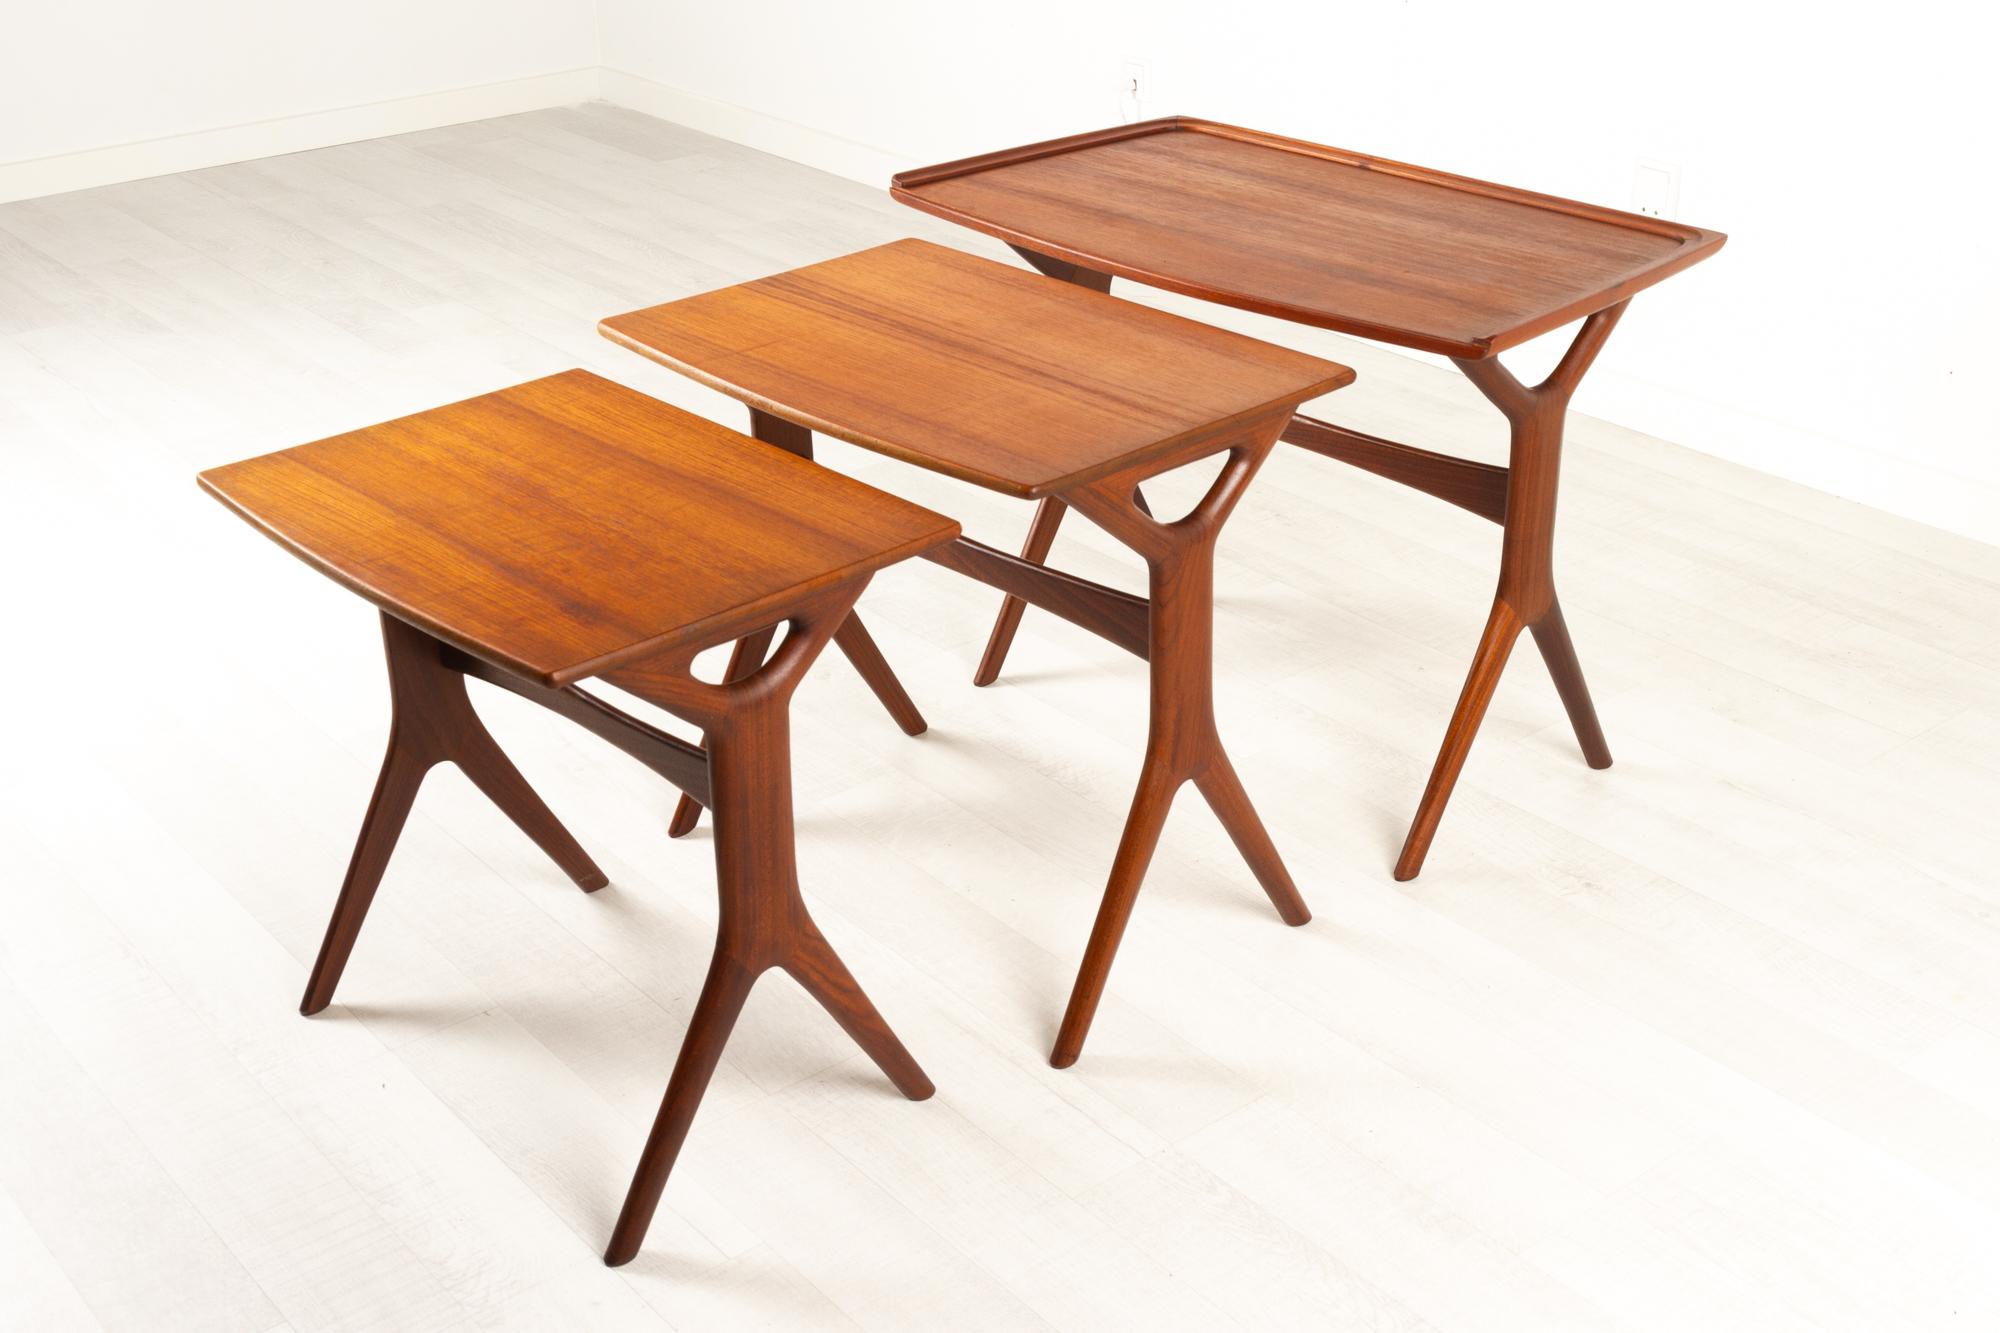 Danish Modern Teak Nesting Tables by Johannes Andersen for CFC, 1960s For Sale 13